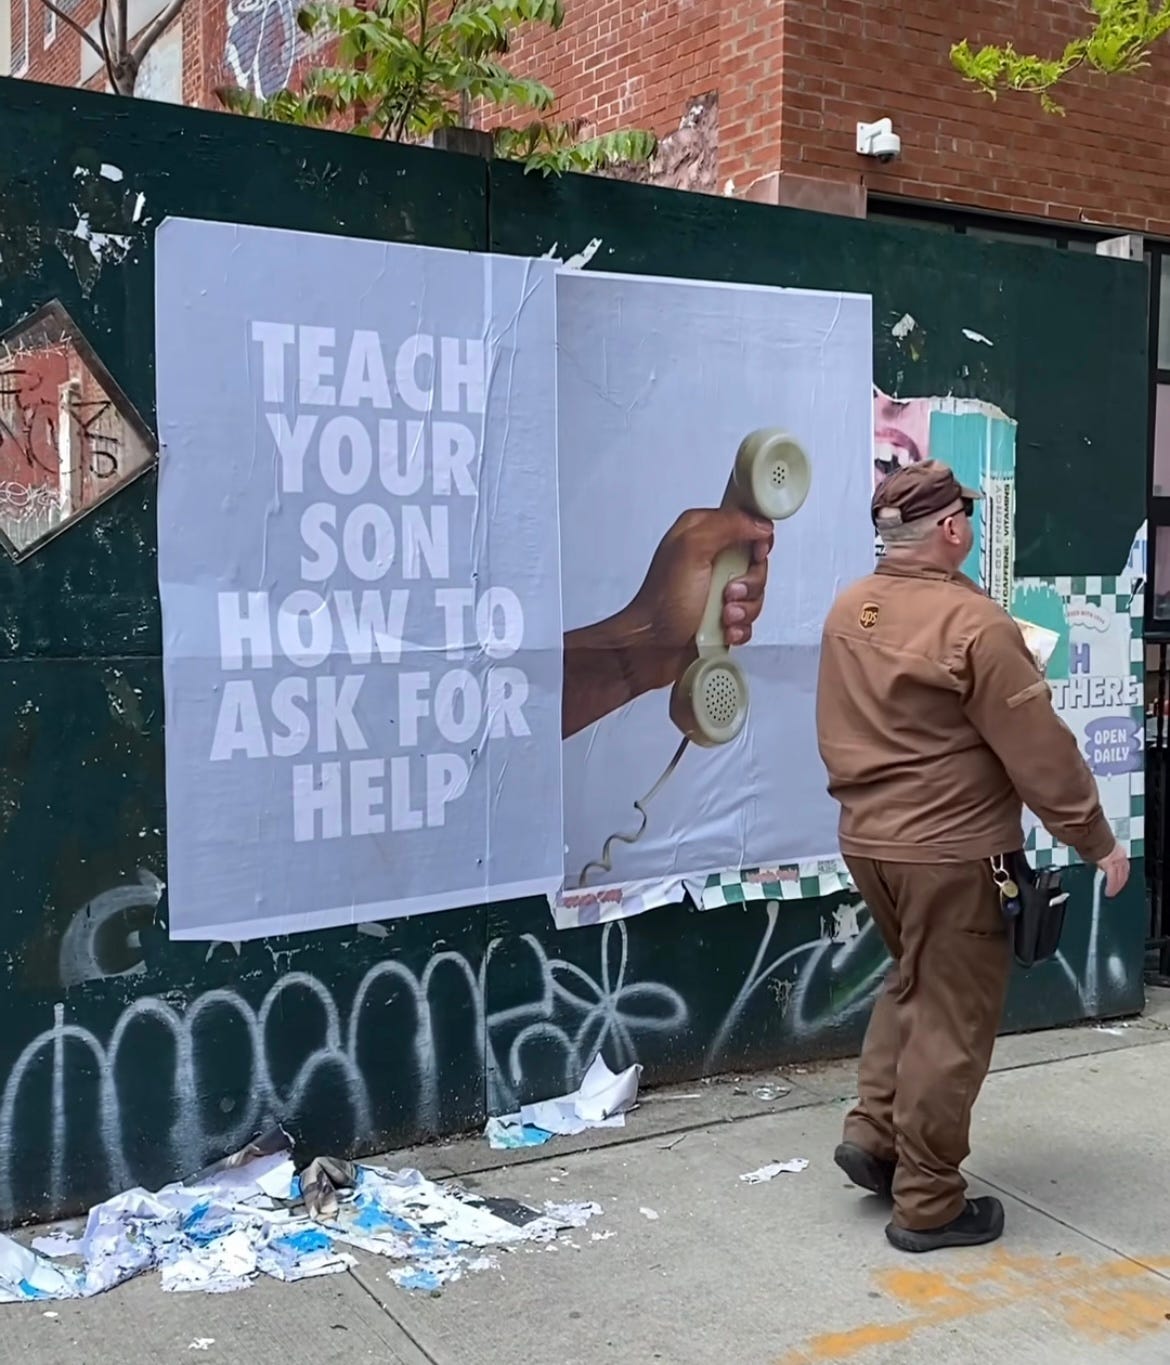 A sinistra la scritta "Teach your son how to ask for help" e di fianco una mano che regge un telefono